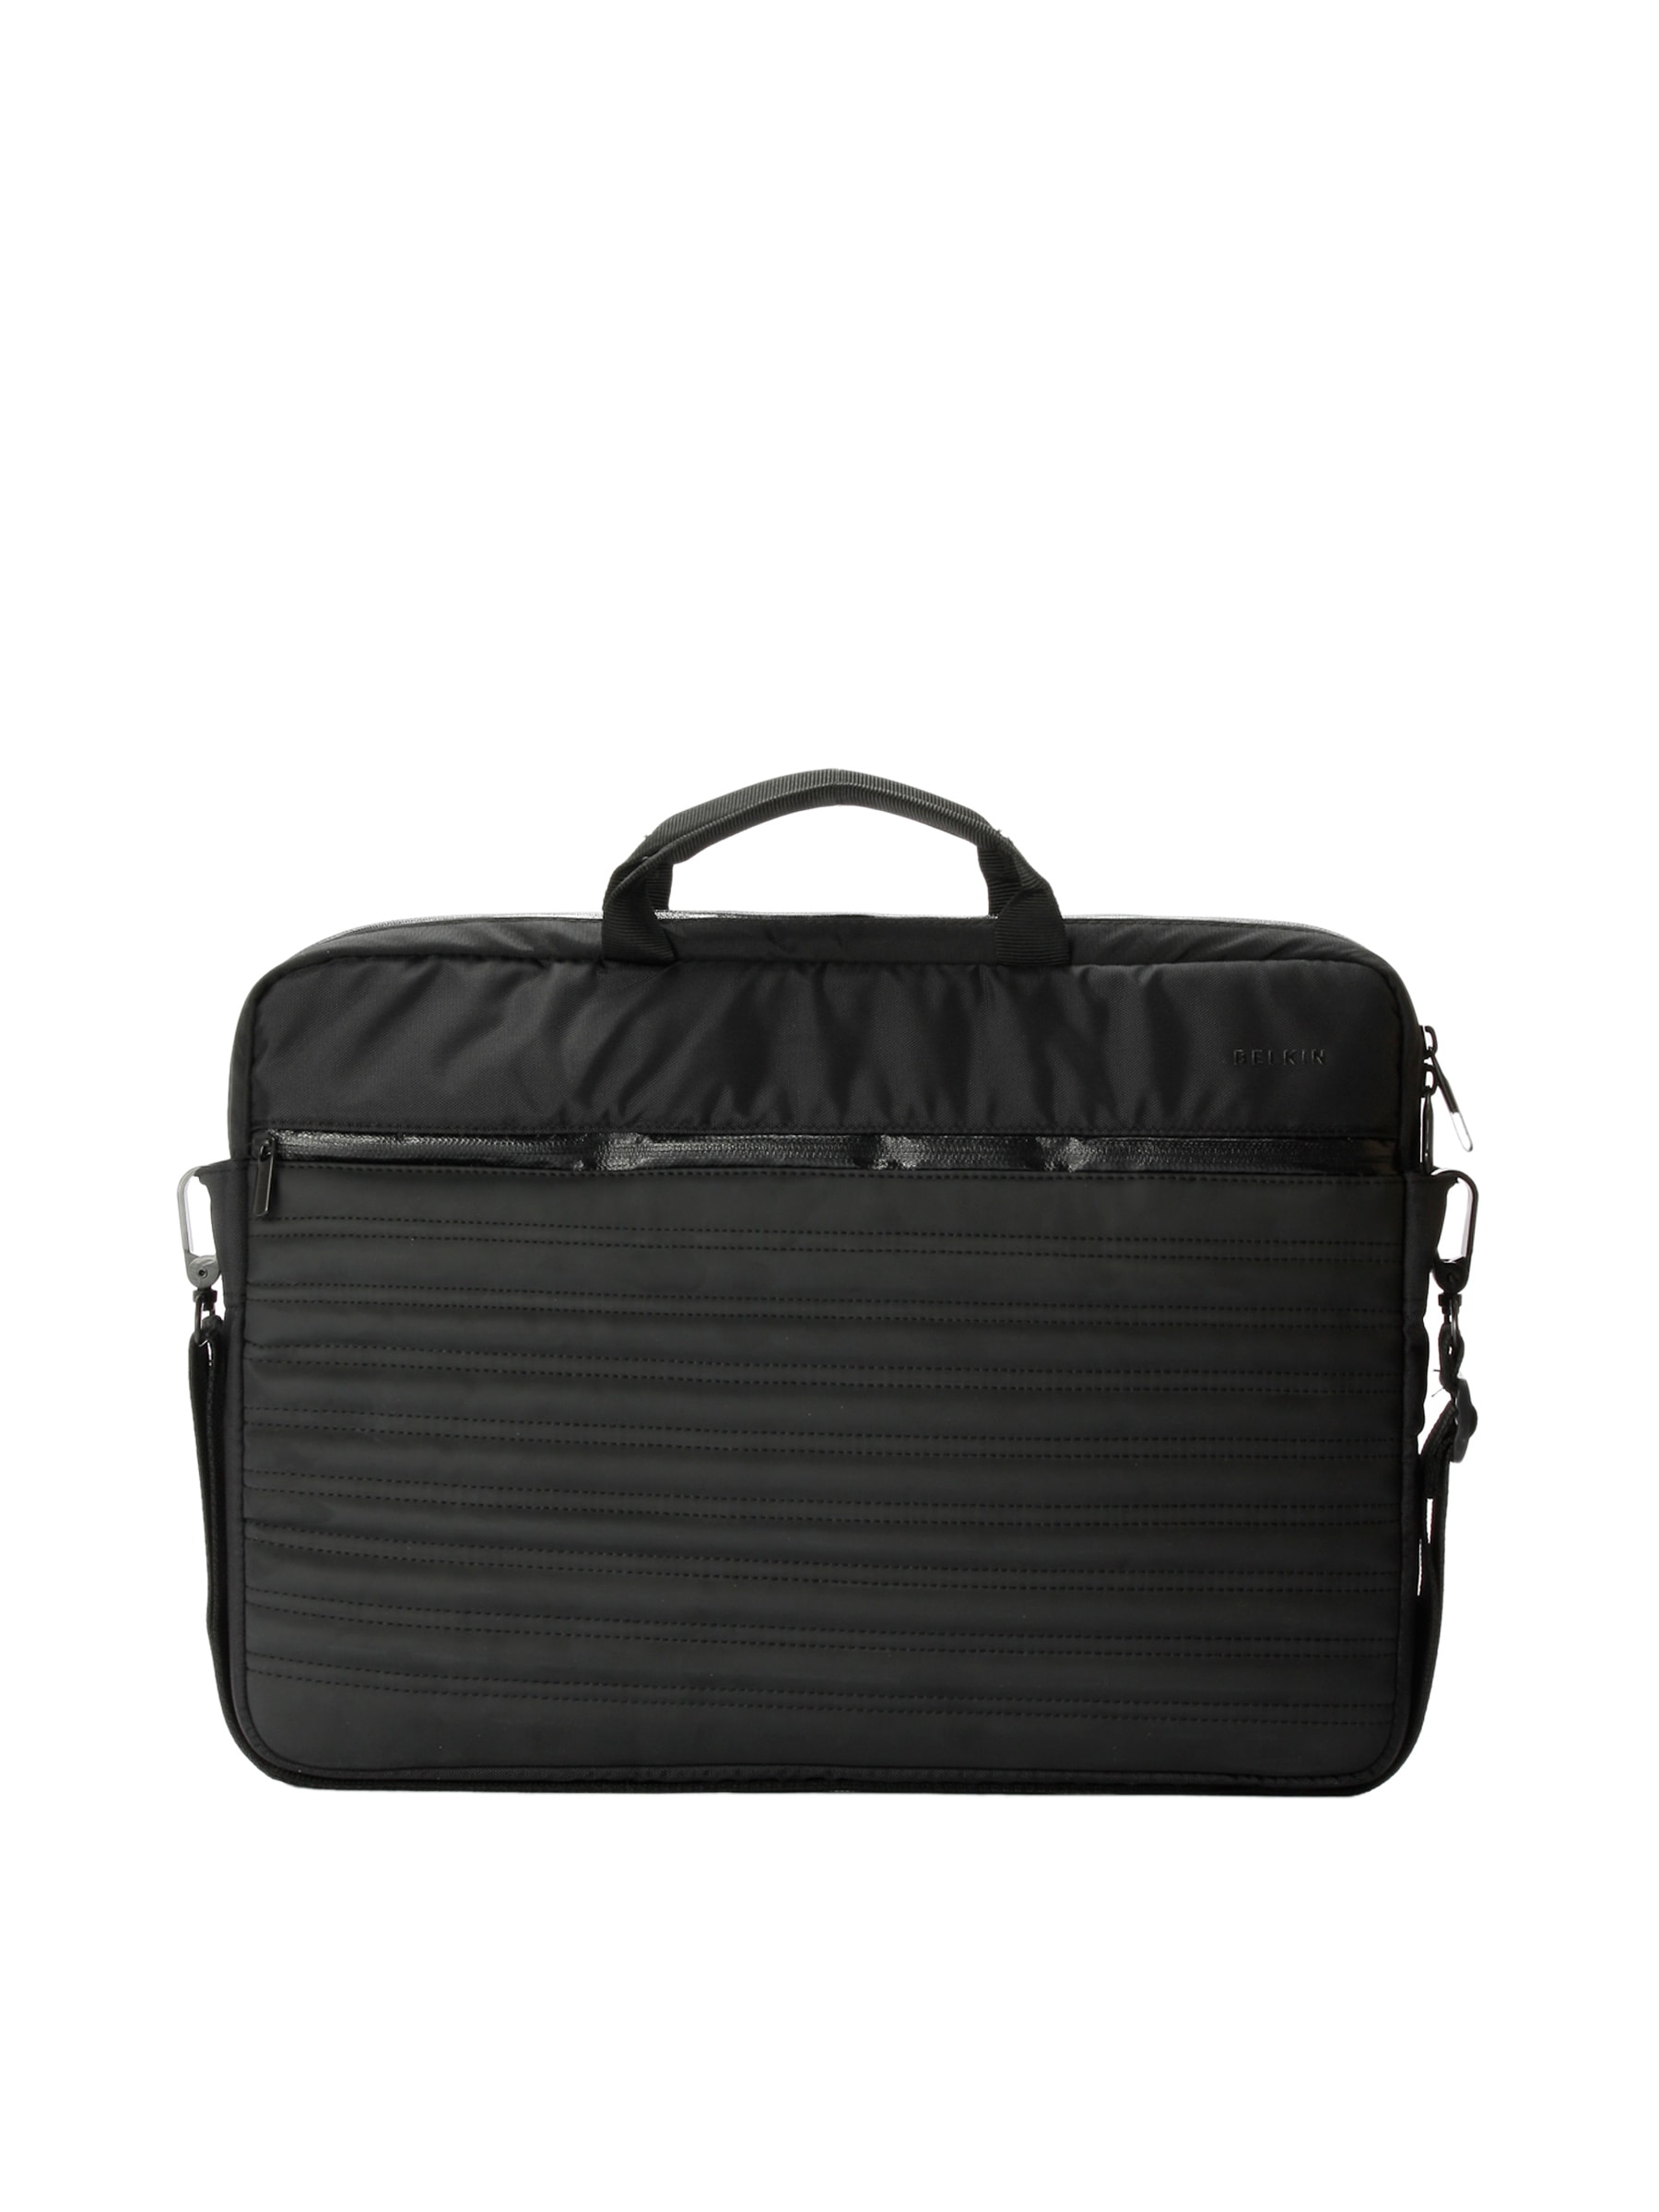 Belkin Unisex Stealth Slip Case Black Laptop Bag